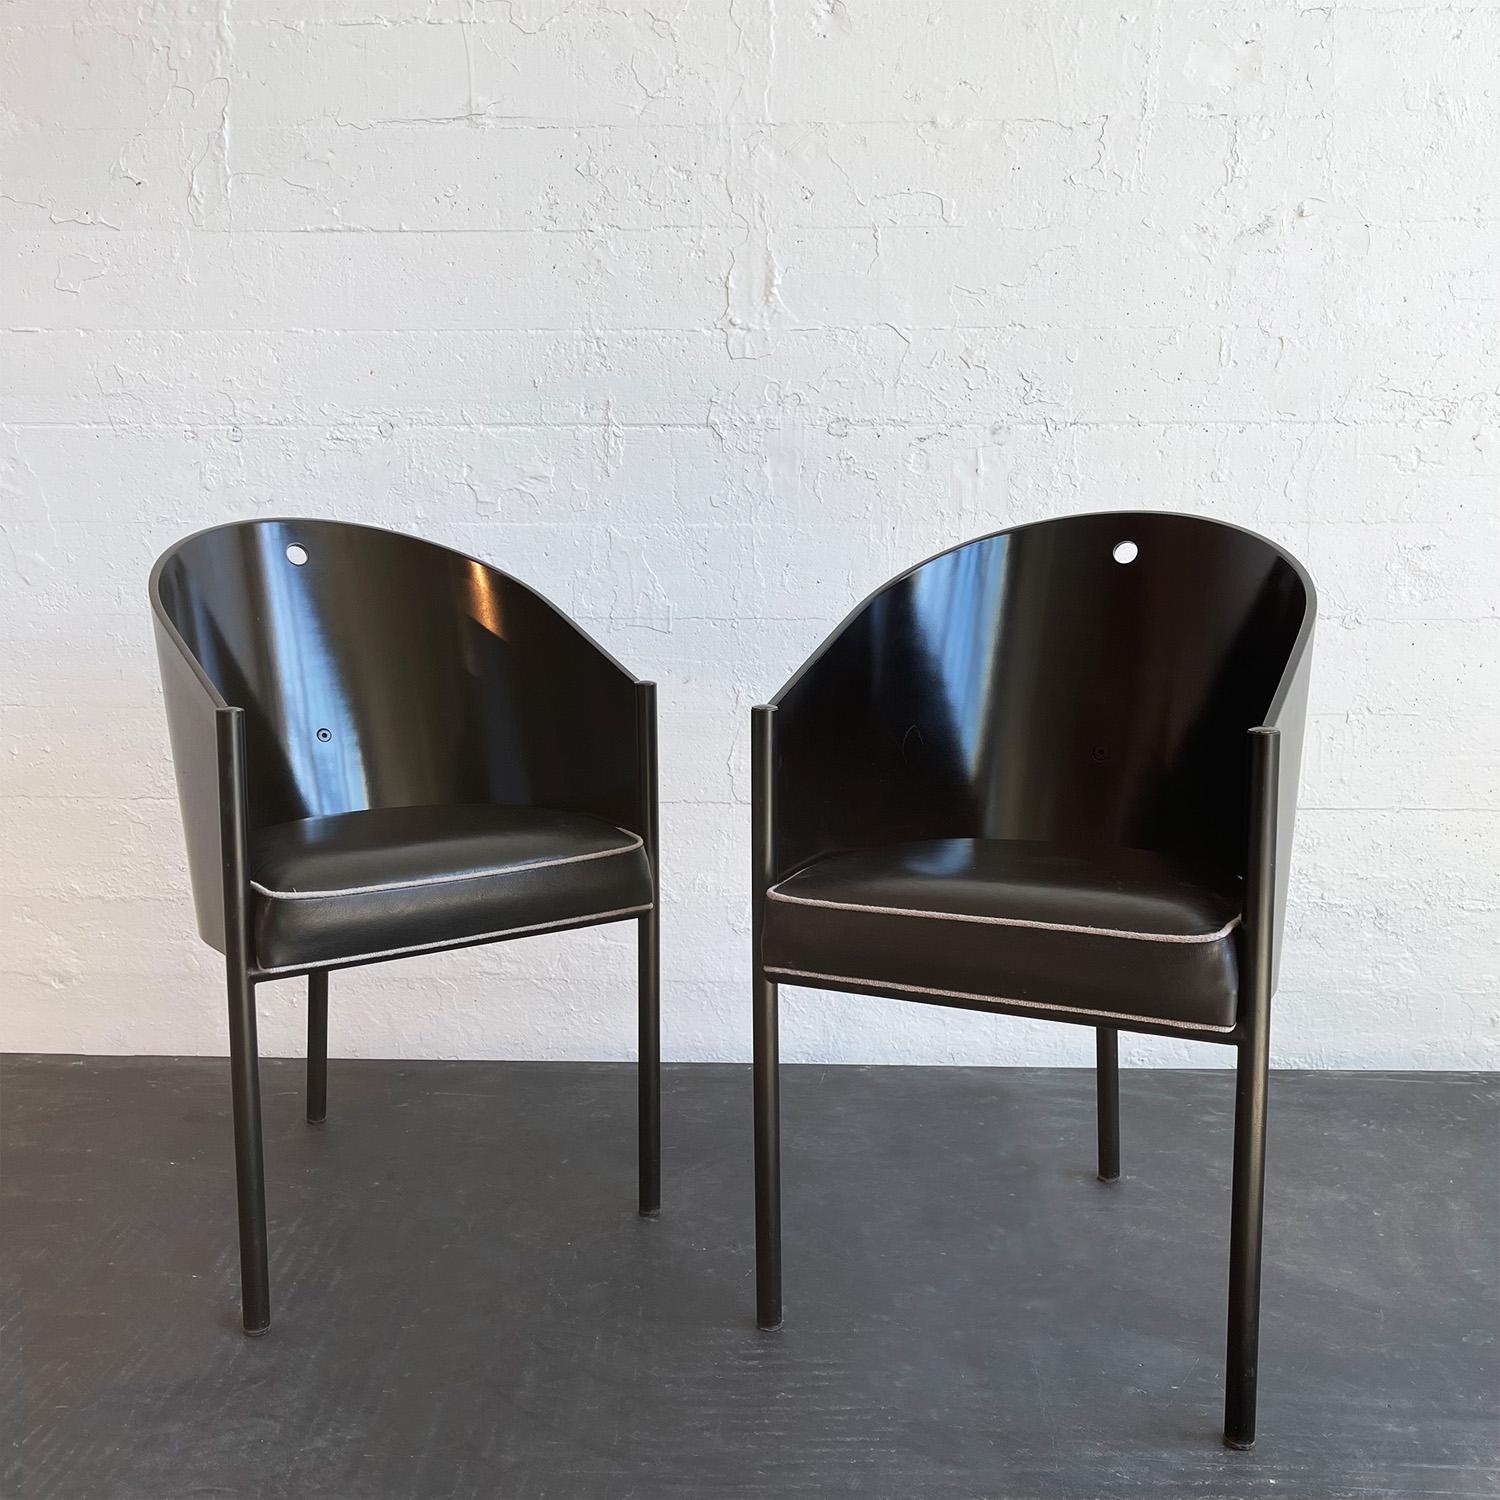 Cette paire de chaises Costes aux lignes épurées a été conçue par le designer et architecte français Philippe Starck pour Driade, Italie, pour le café Costes à Paris. La coque de la chaise est en contreplaqué laqué noir et repose sur trois pieds en